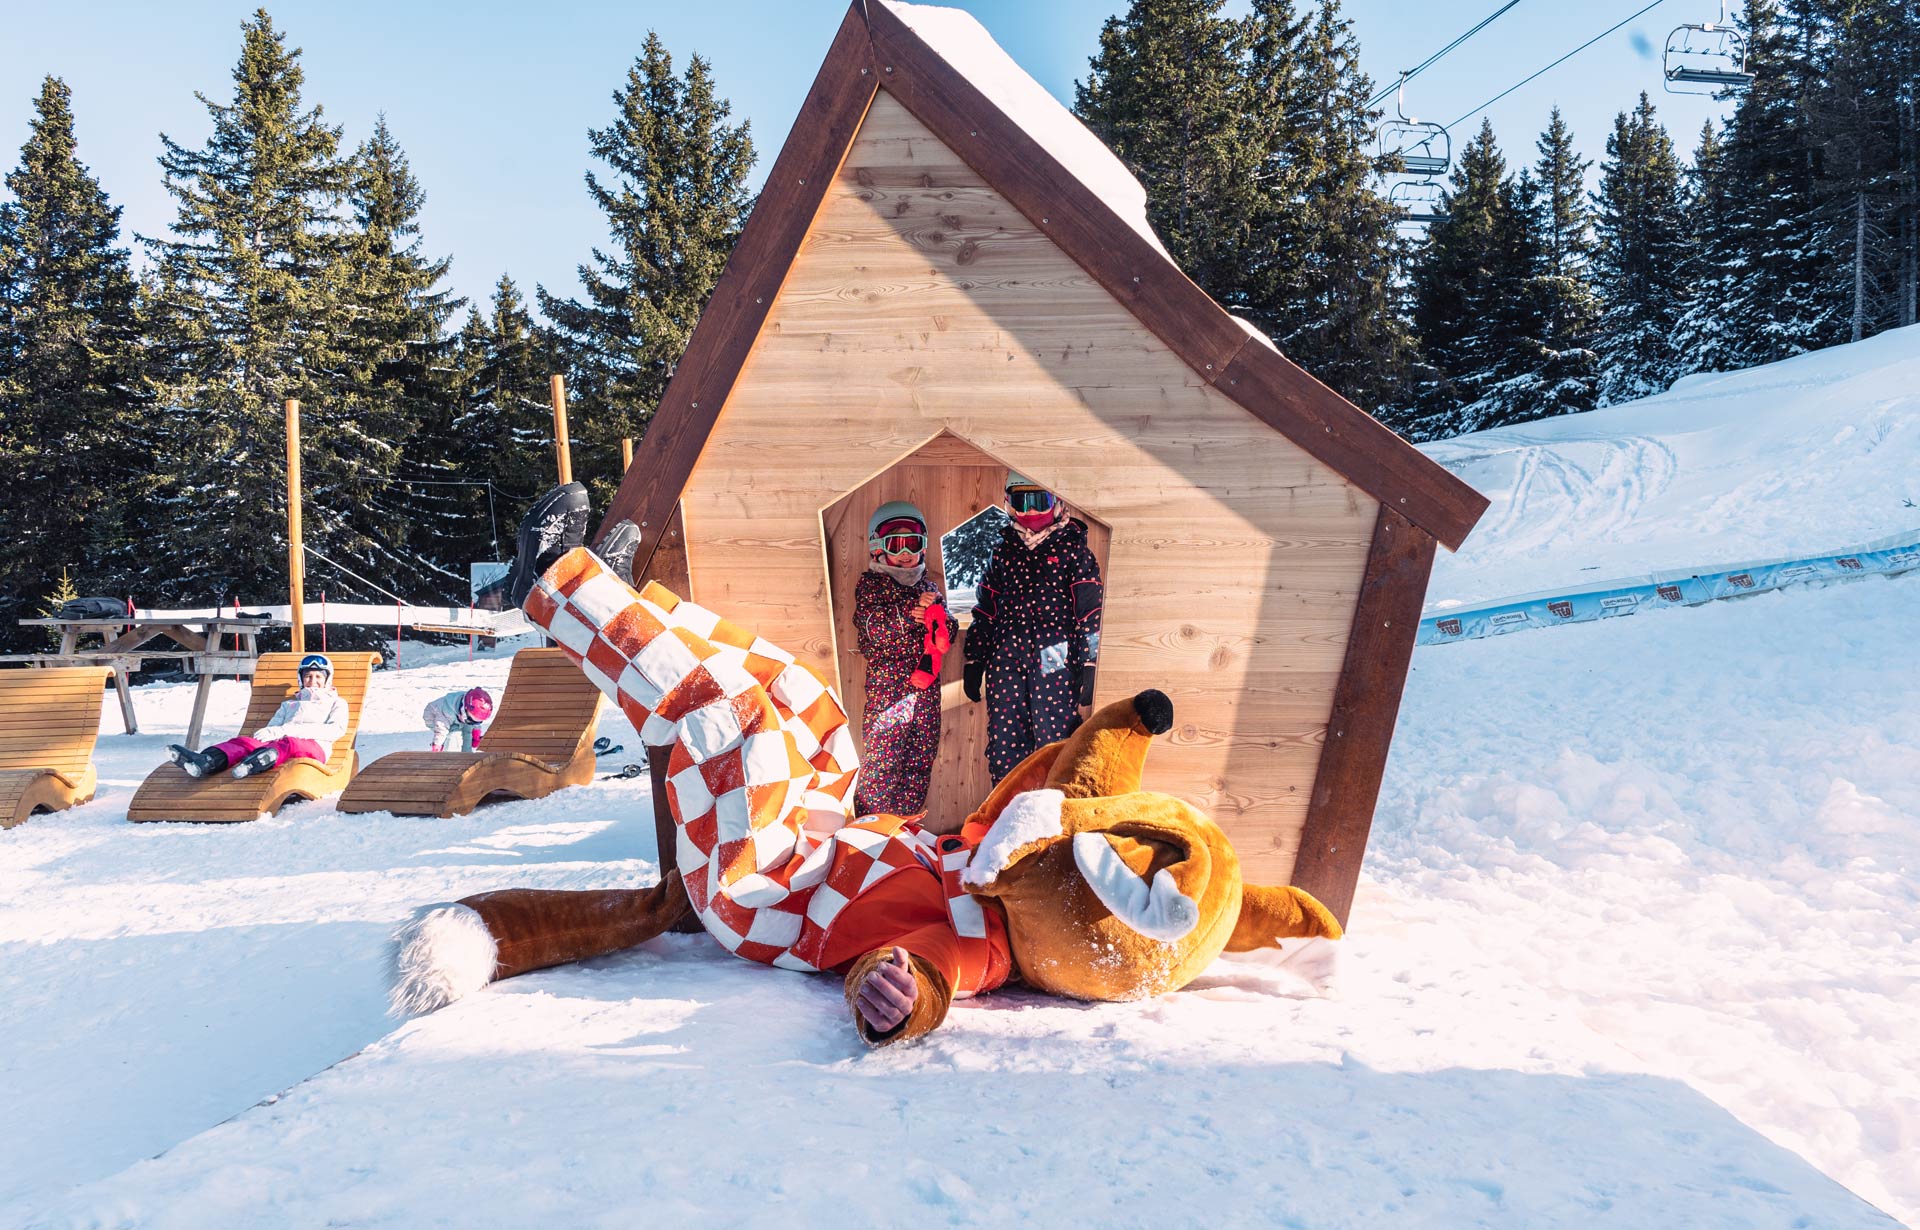 Chamrousse montagne de téo nouvelle zone détente piste ski ludique famille enfant station grenoble isère alpes france - © CH - OT Chamrousse